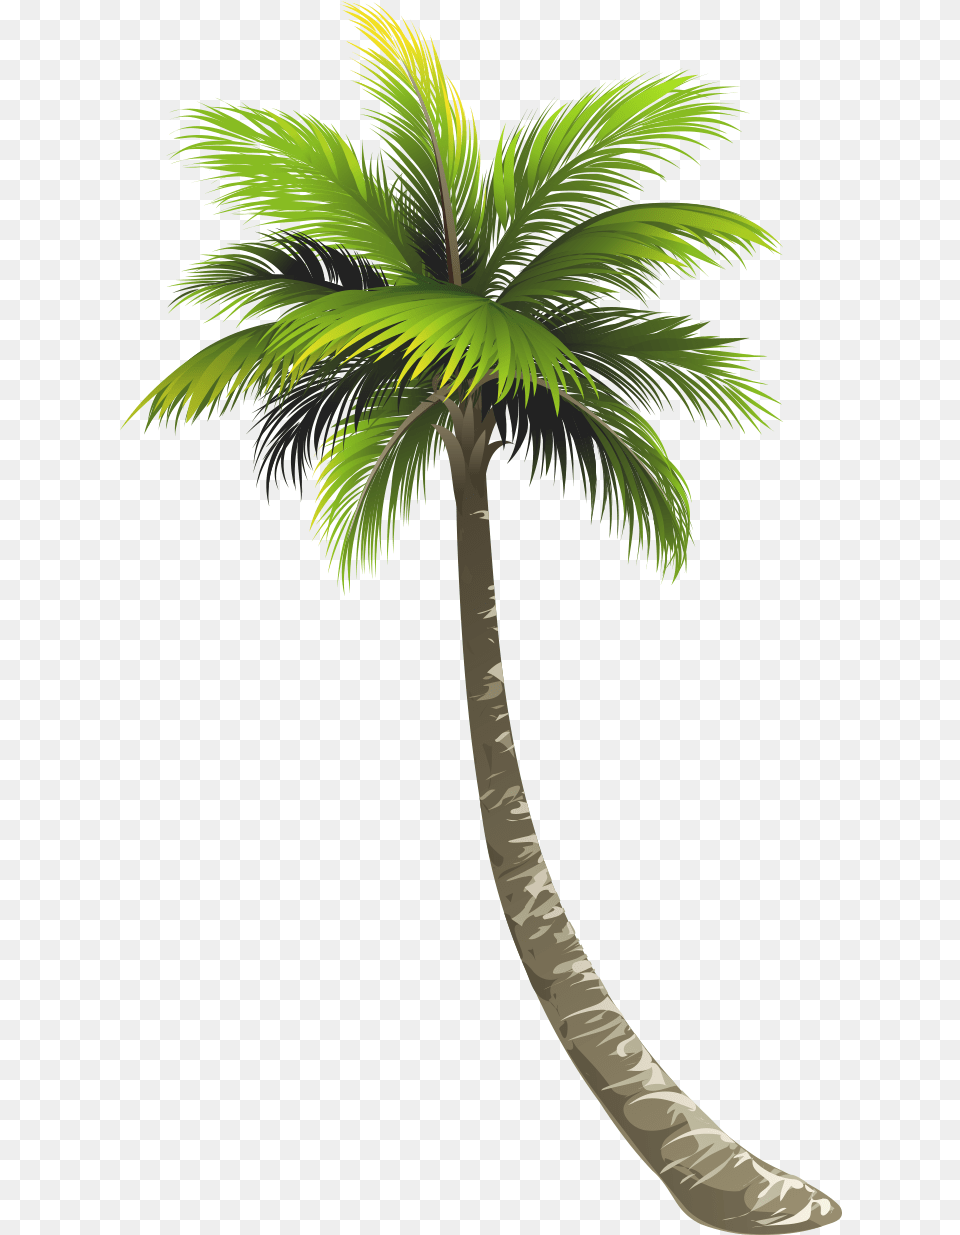 Royal, Palm Tree, Plant, Tree Png